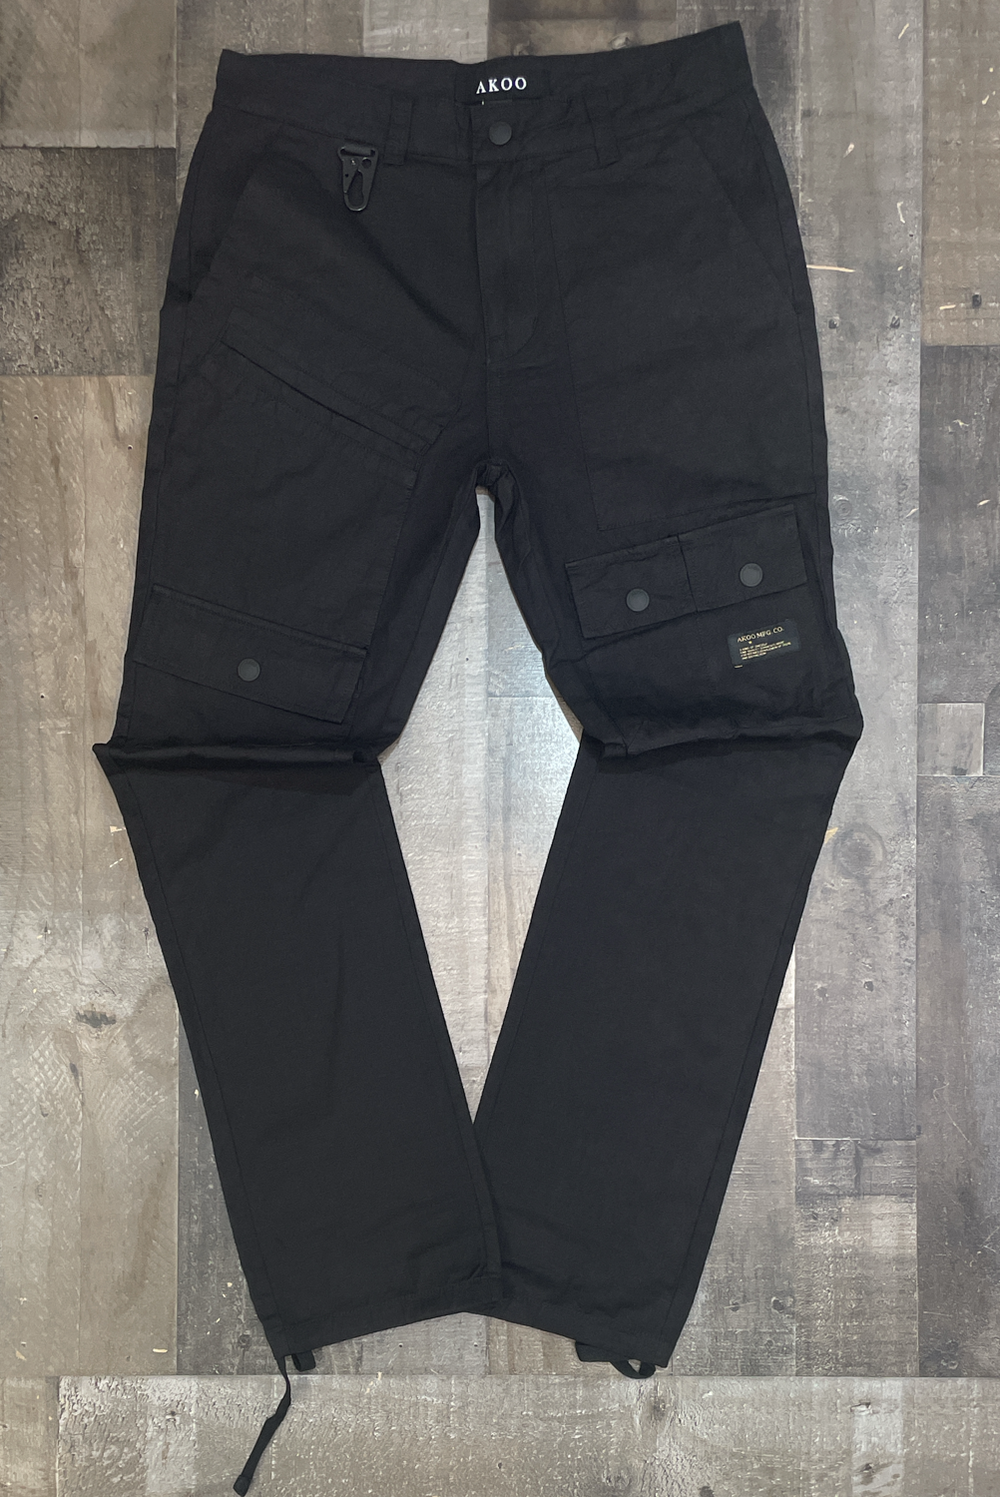 Akoo -base cargo pants (black)